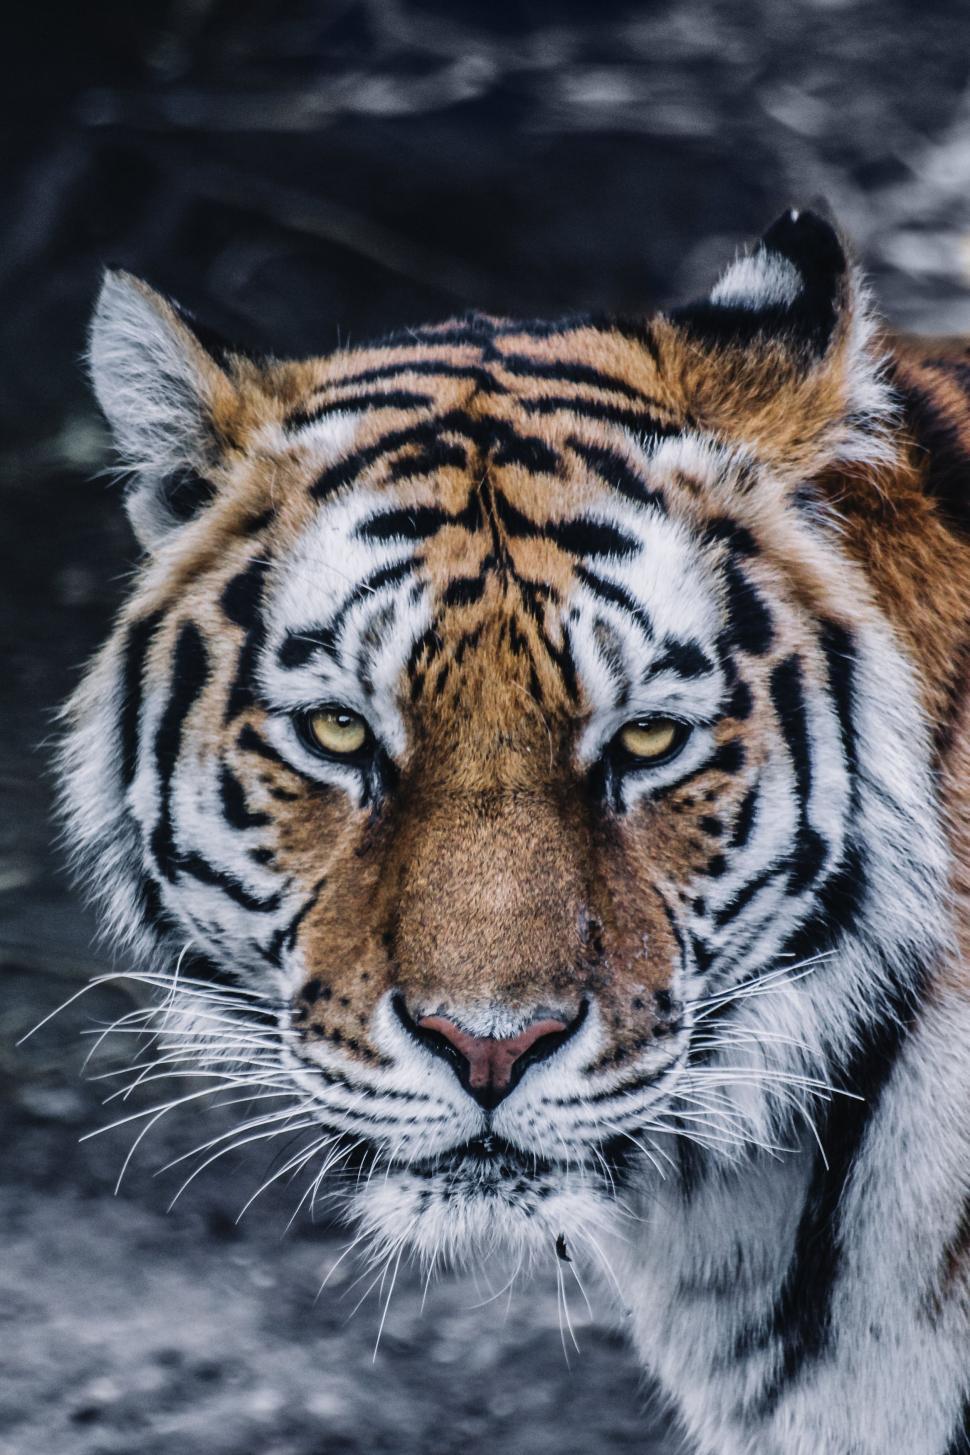 Free Image of Tiger Eyes  